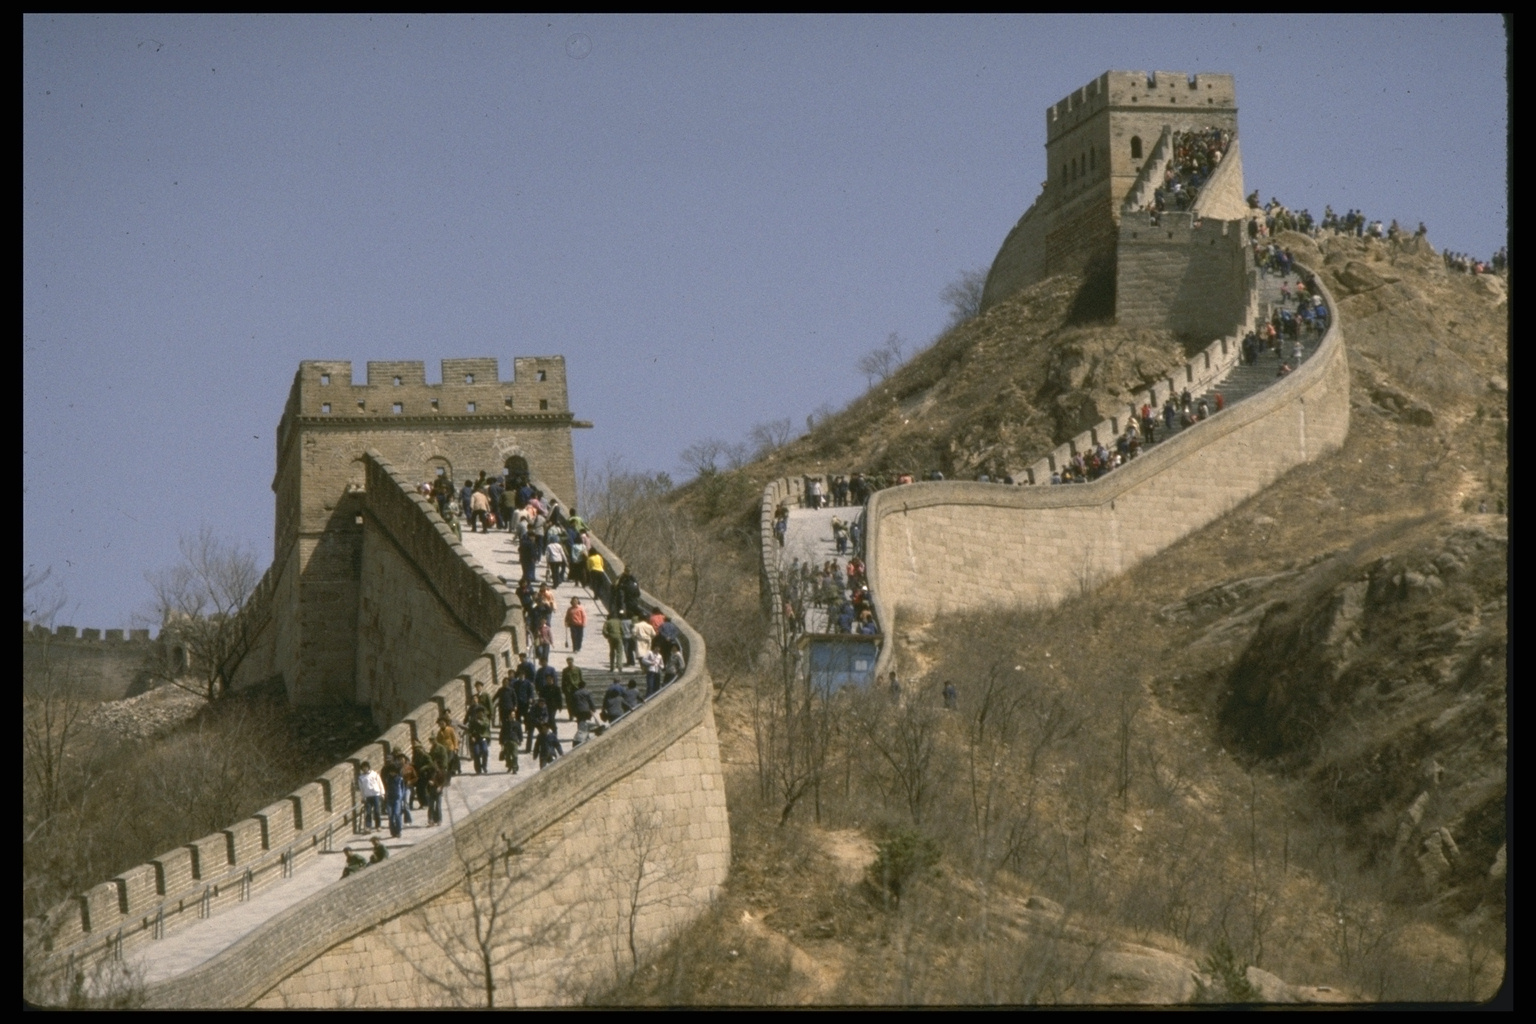 Kilometros de la muralla china